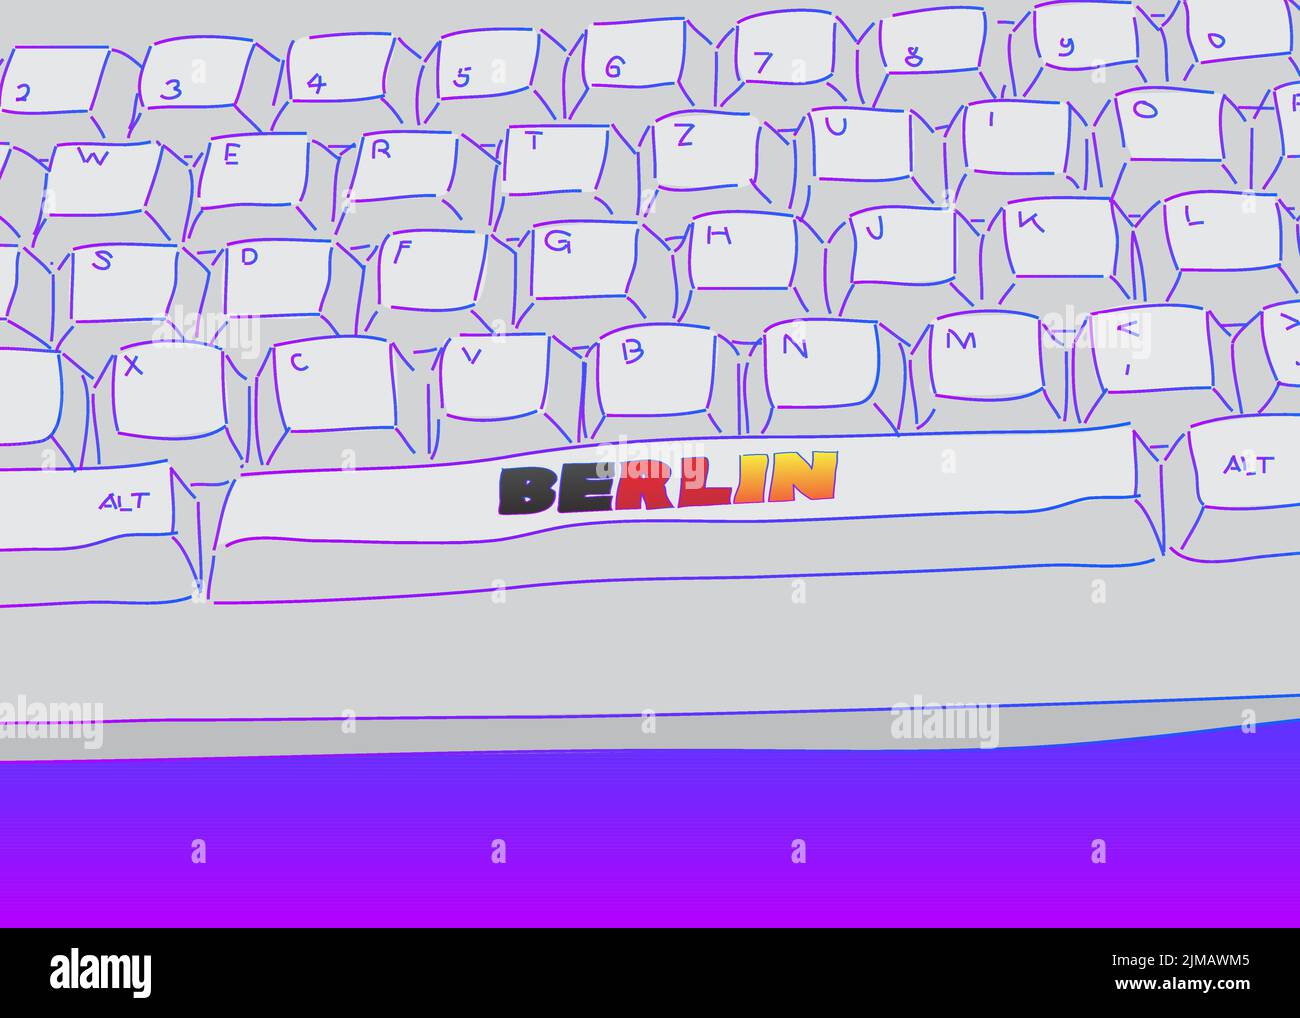 Computertastatur mit Berliner Text. Nahaufnahme eines elektronischen Computergeräteteils, einer Tastatur. Stock Vektor